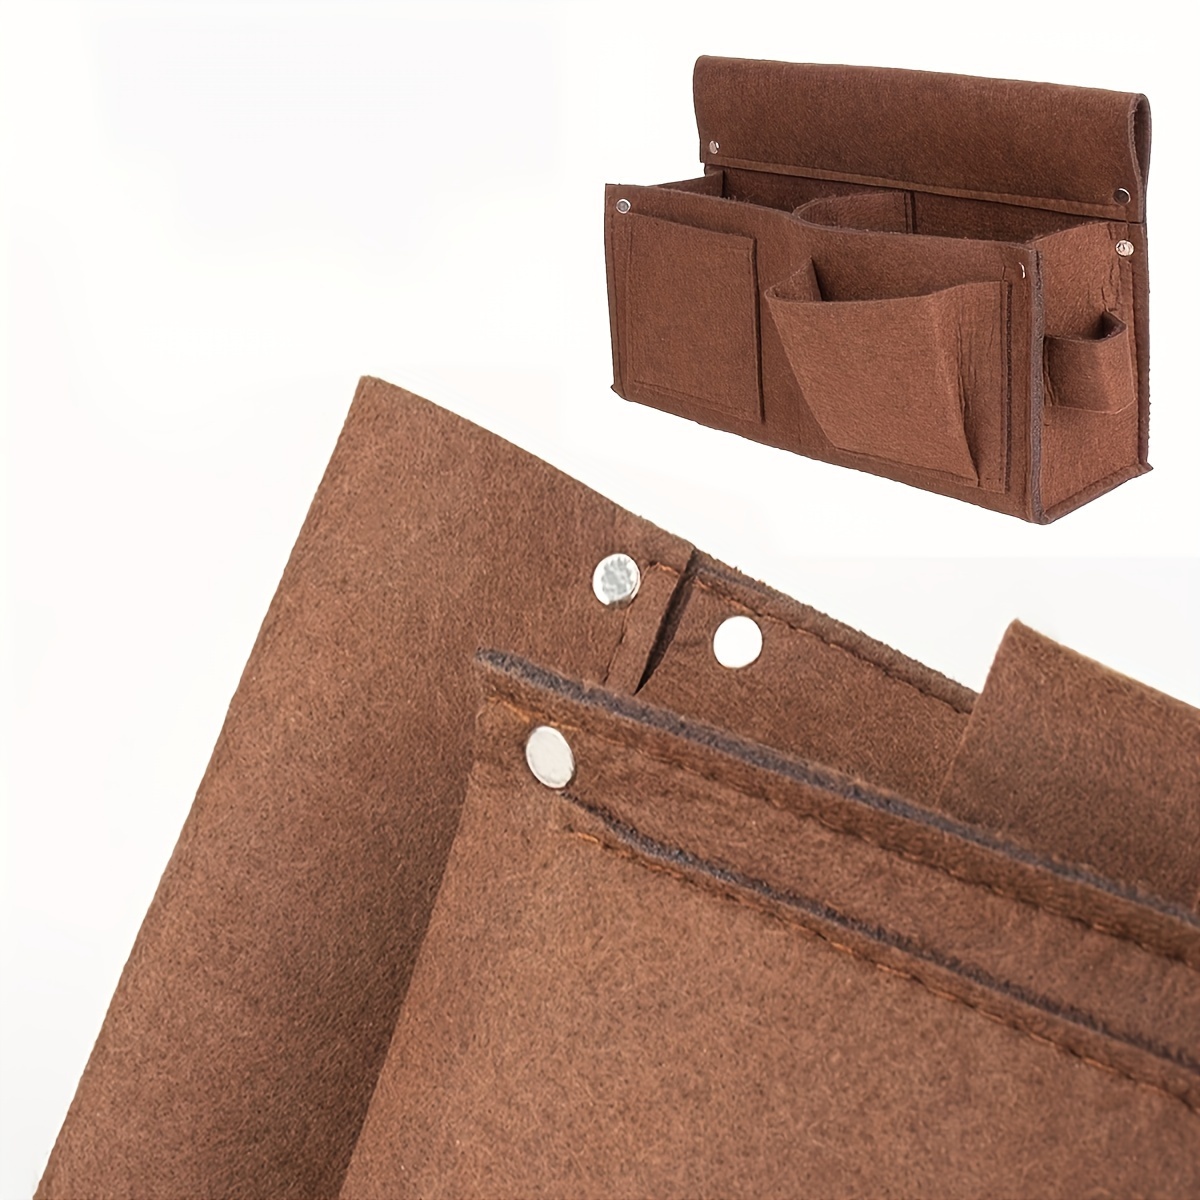  Cinturón de herramientas de construcción resistente marrón y  negro de 11 bolsillos, delantal de trabajo, bolsa de herramientas, con  hebilla de liberación rápida de cinturón de tela de polietileno, se ajusta